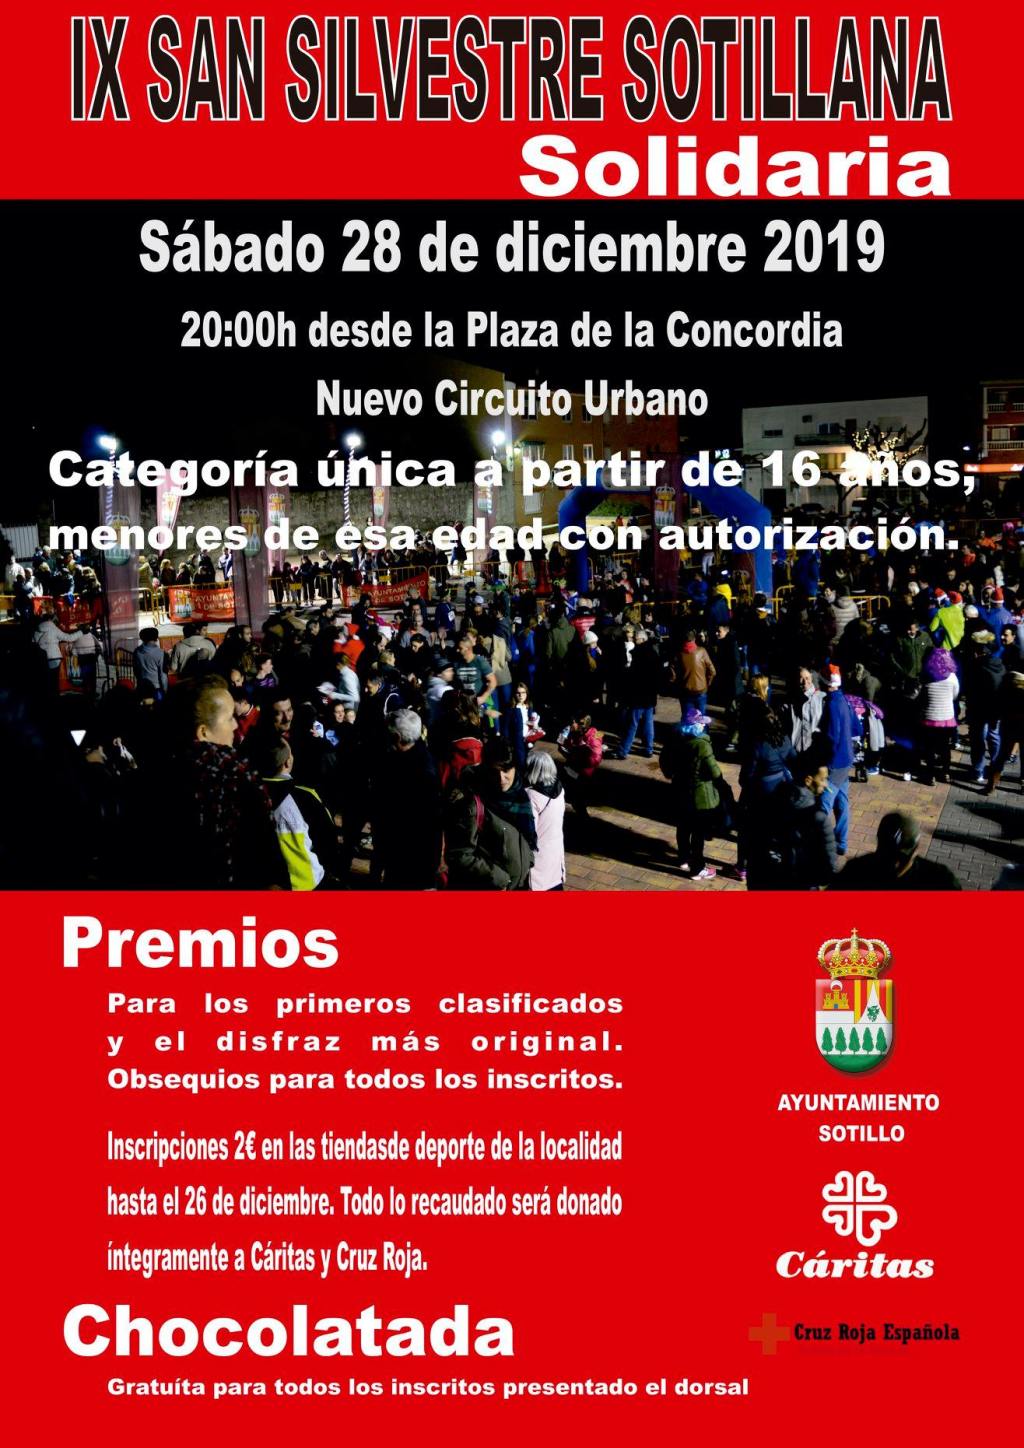 28 Dic: IX San Silvestre Sotillana Solidaria en #SotilloDeLaAdrada